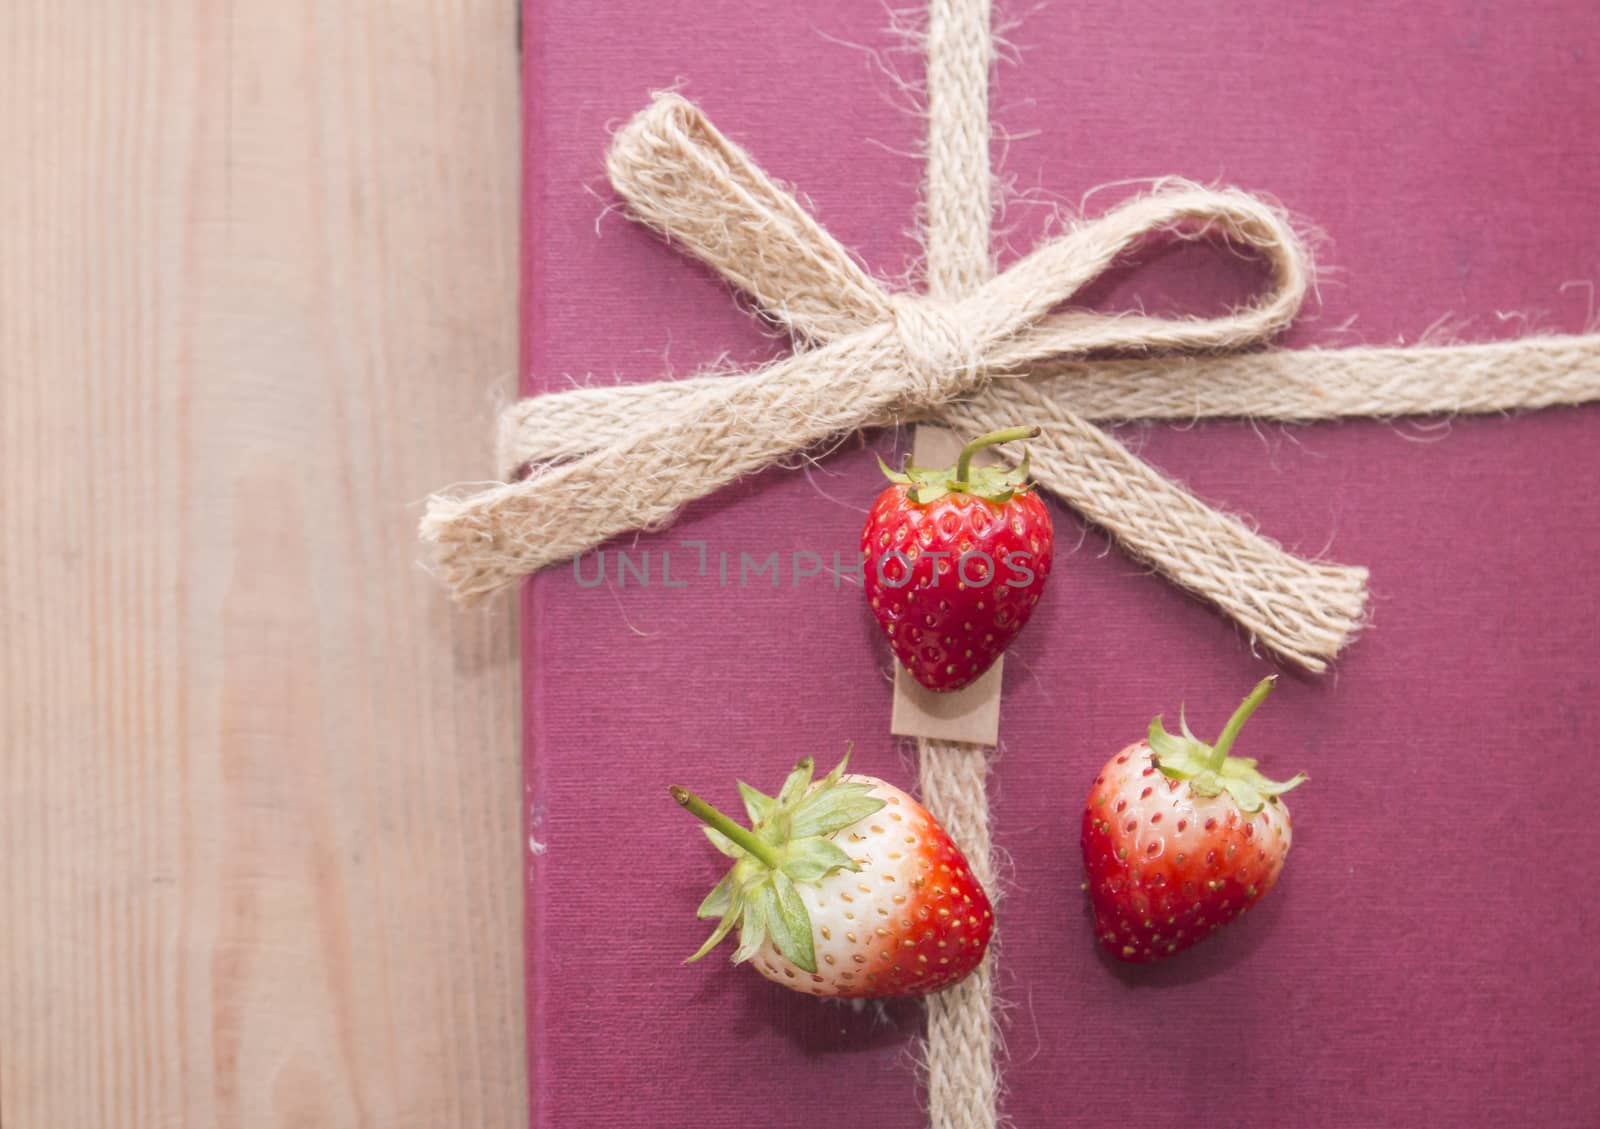 Three strawberries on gift box